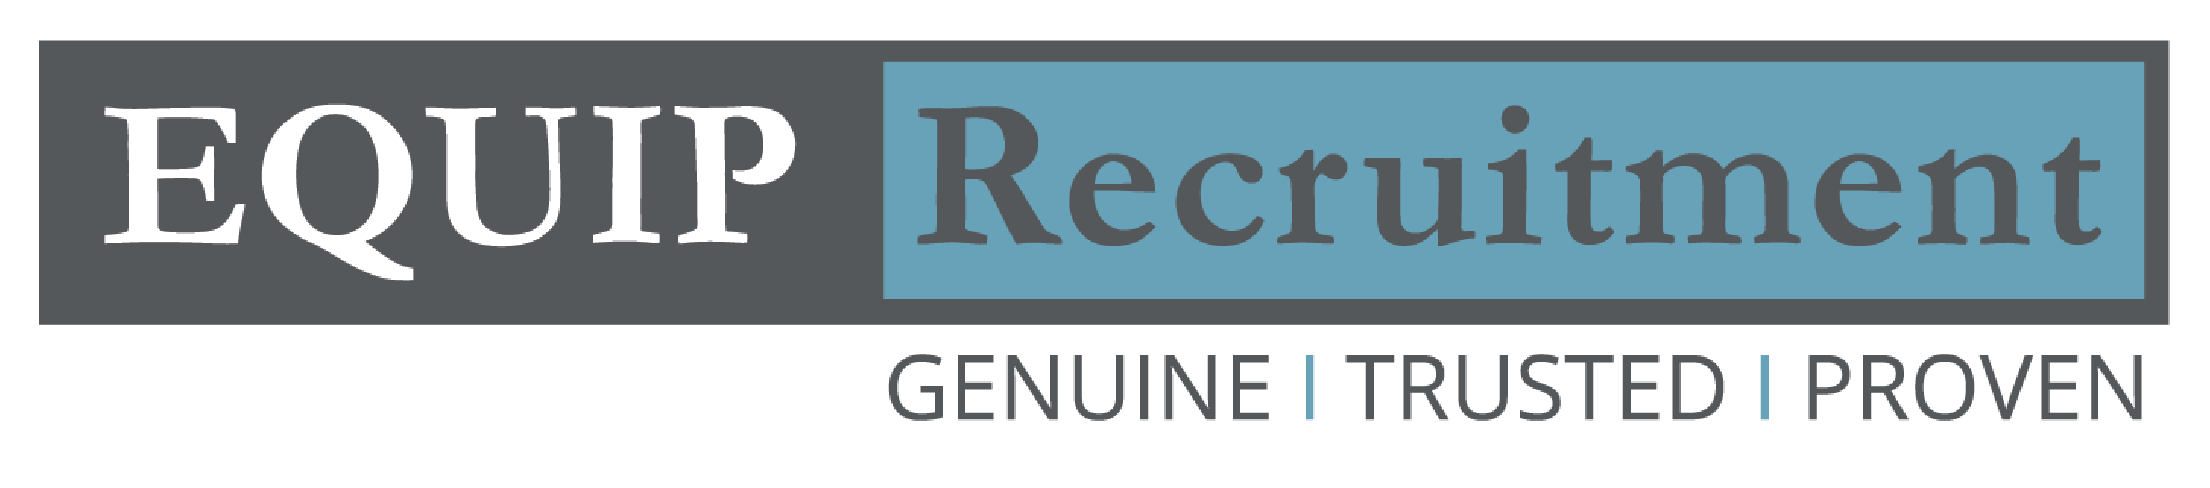 Equip Recruitment